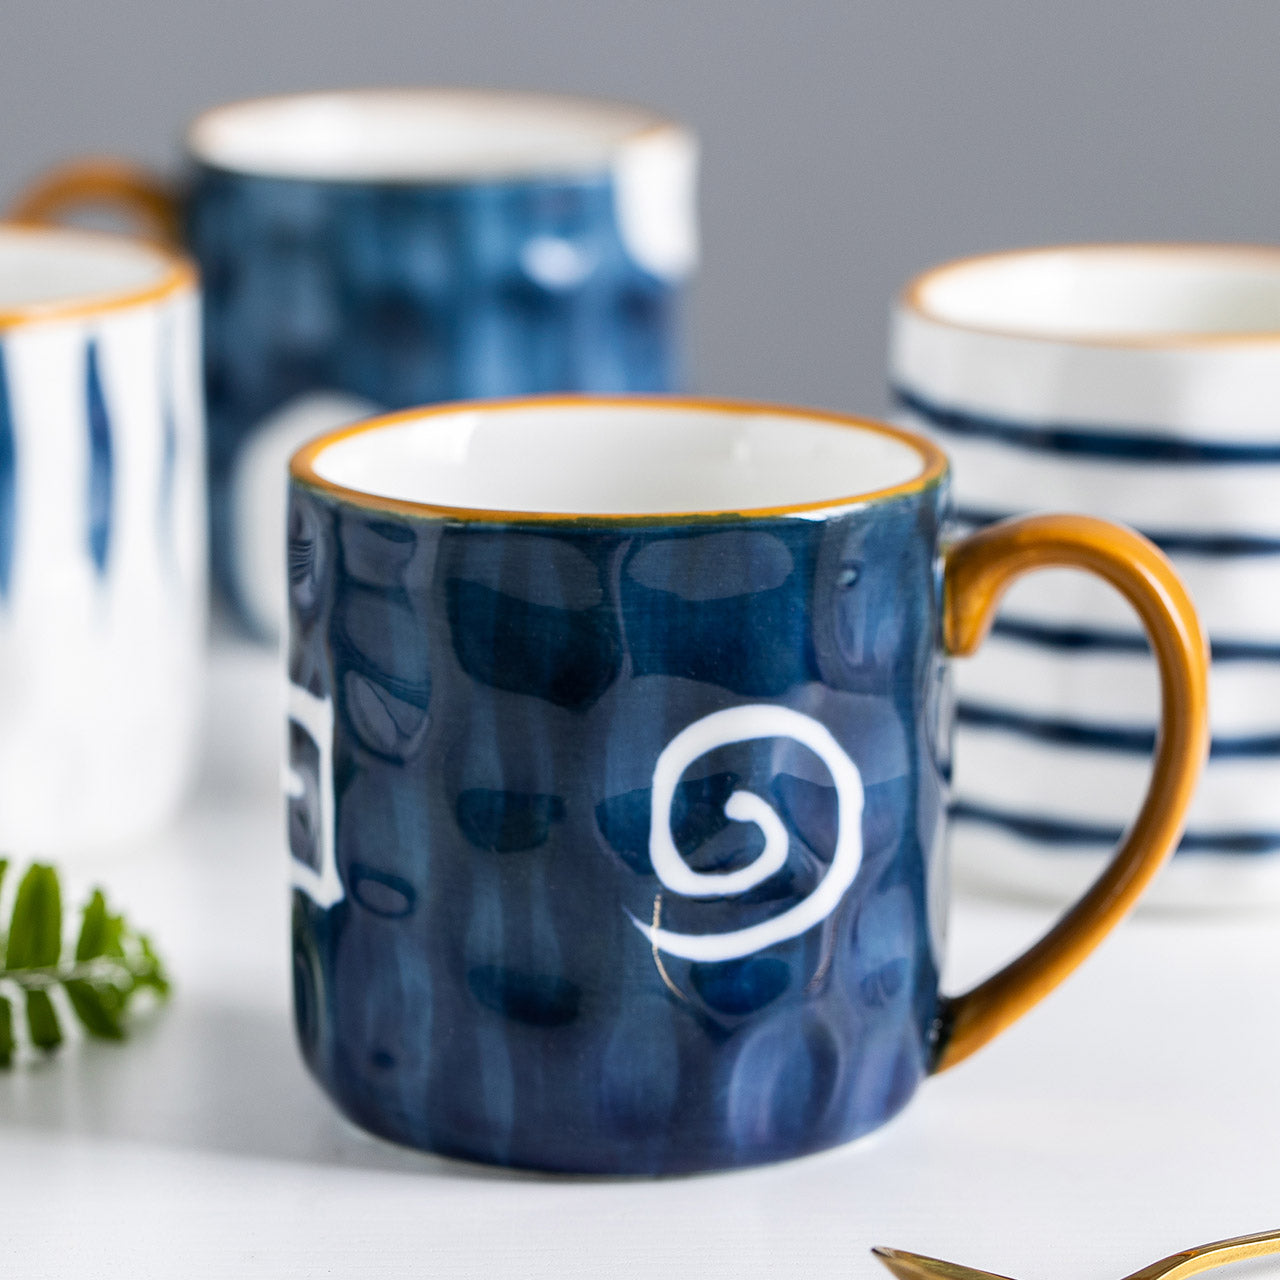 Japanese Glazed Ceramic Mug with Bumpy Surface